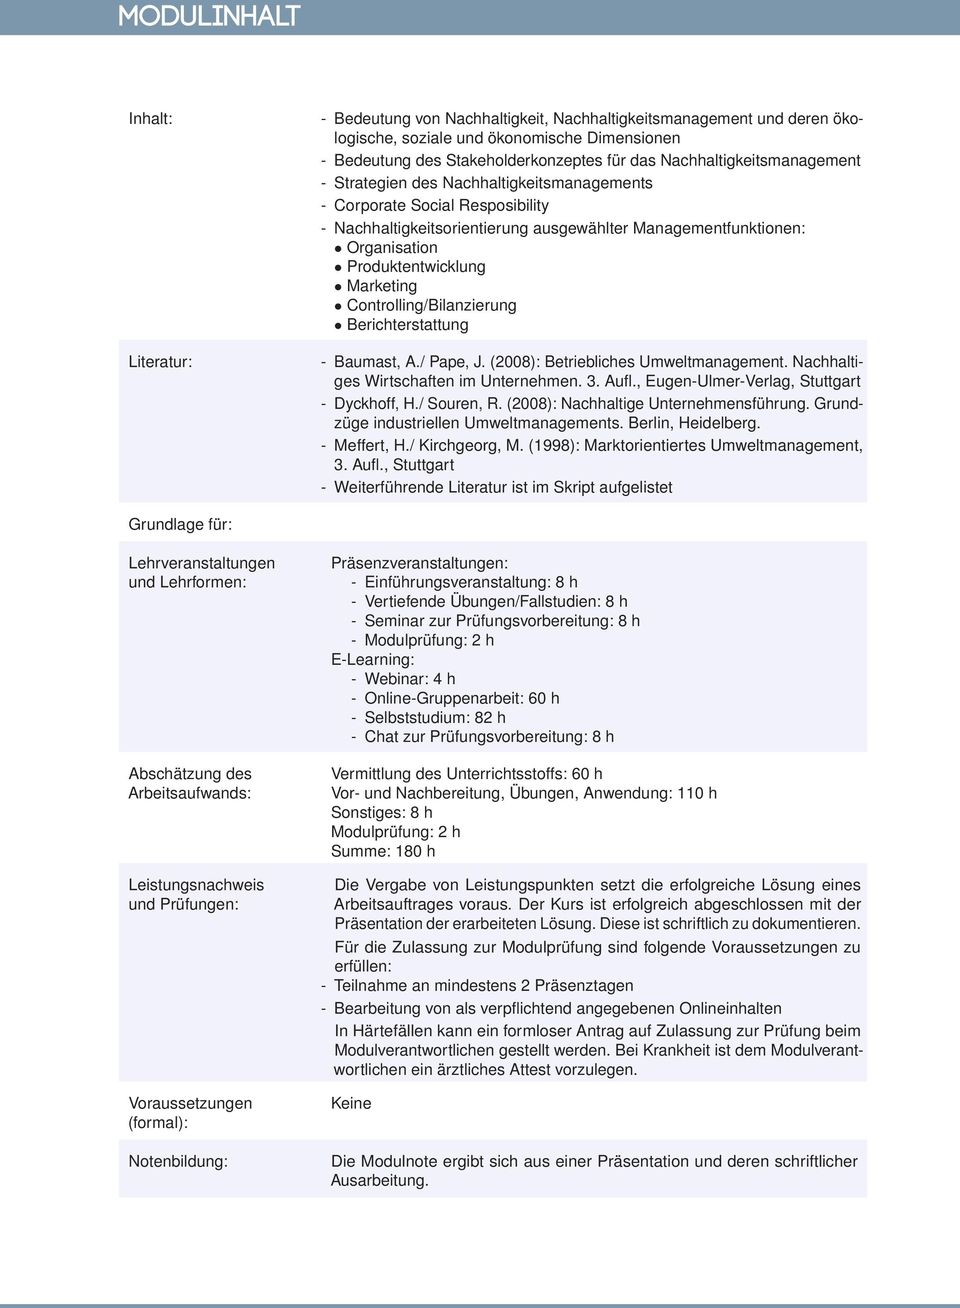 Marketing Controlling/Bilanzierung Berichterstattung - Baumast, A./ Pape, J. (2008): Betriebliches Umweltmanagement. Nachhaltiges Wirtschaften im Unternehmen. 3. Aufl.